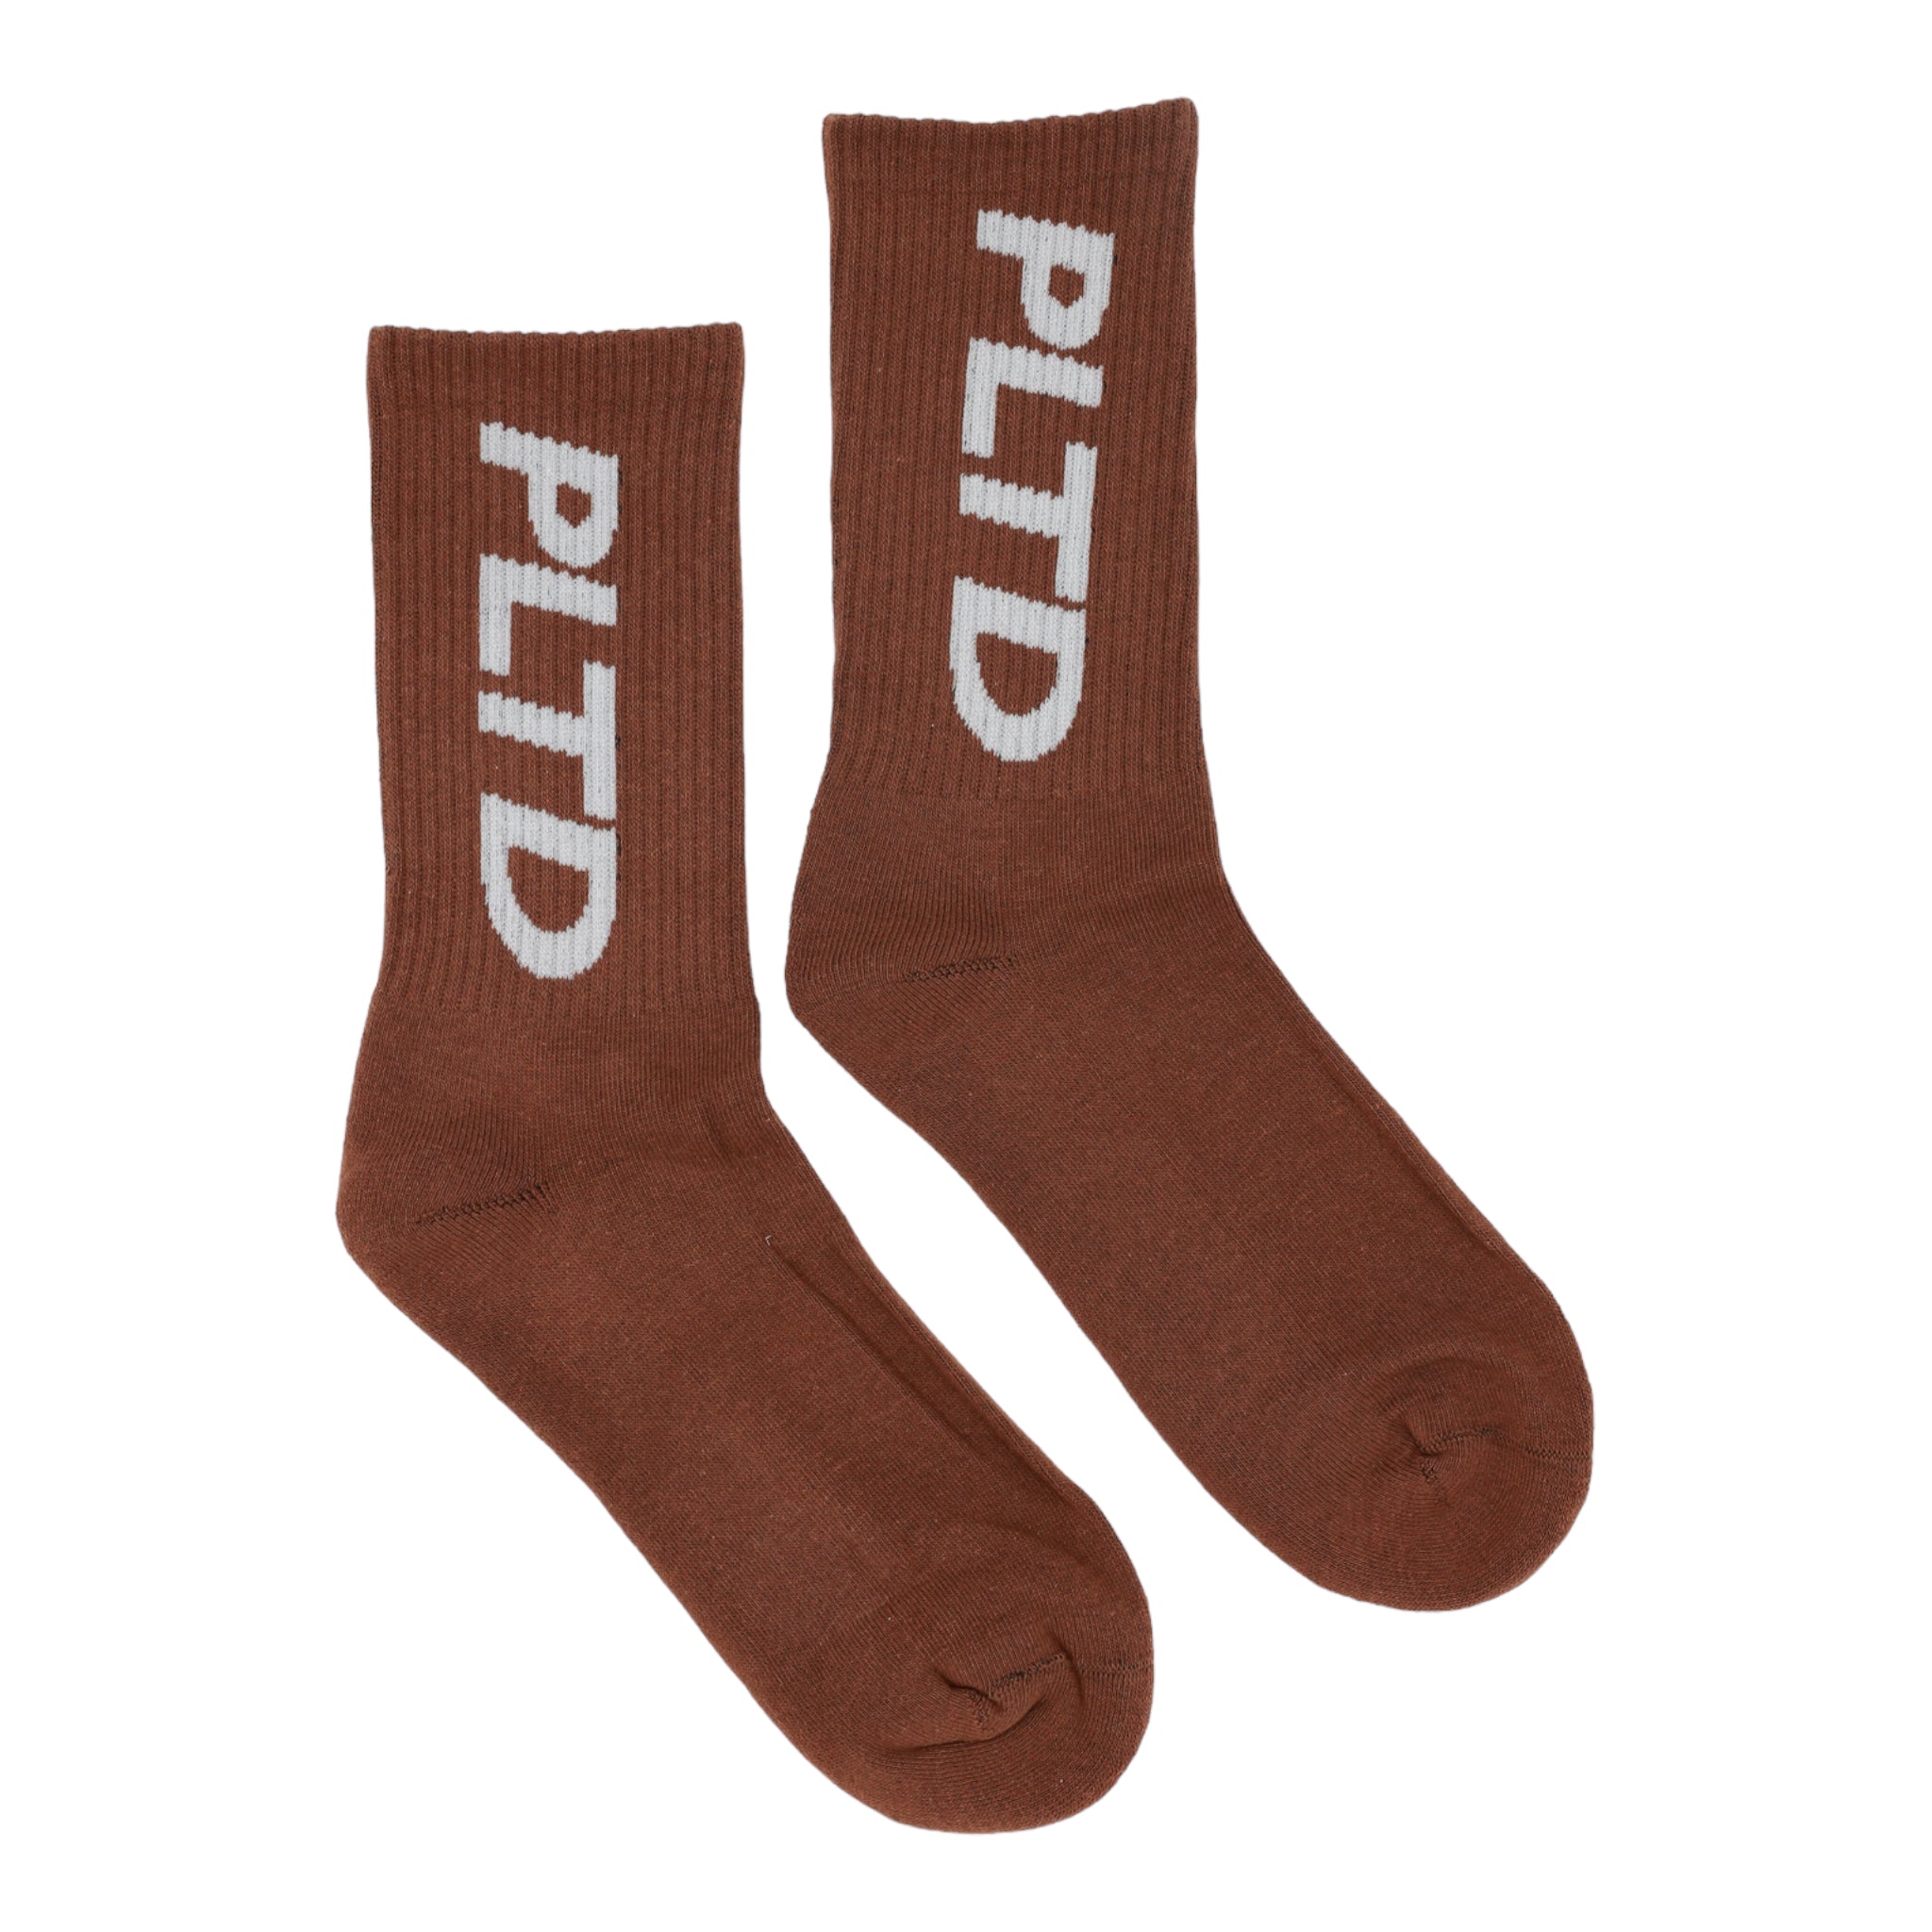 Team PLTD - Toffee Socks